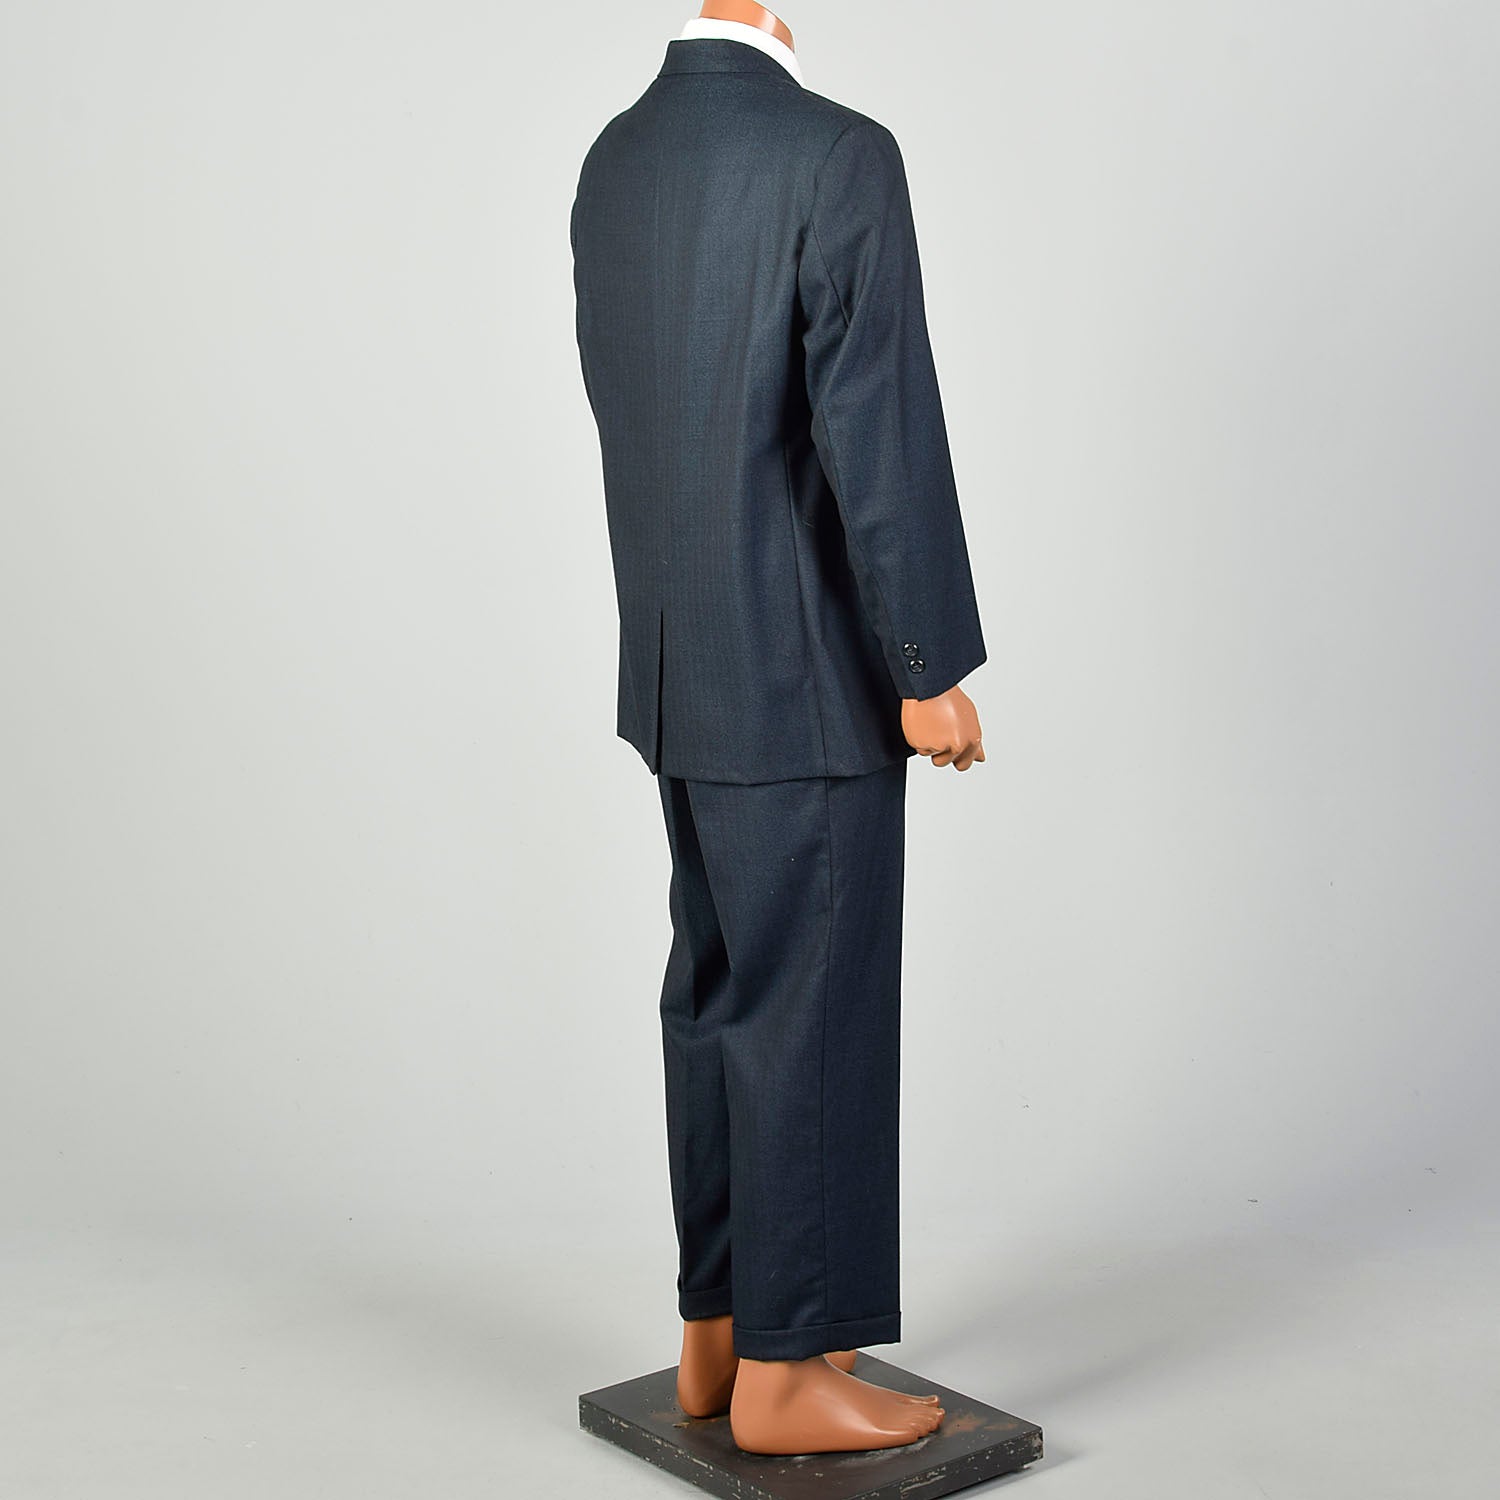 44L 1960s 2pc Suit Blue Herringbone 2 Button Slim Lapel Richman Brothers Flat Front Pants